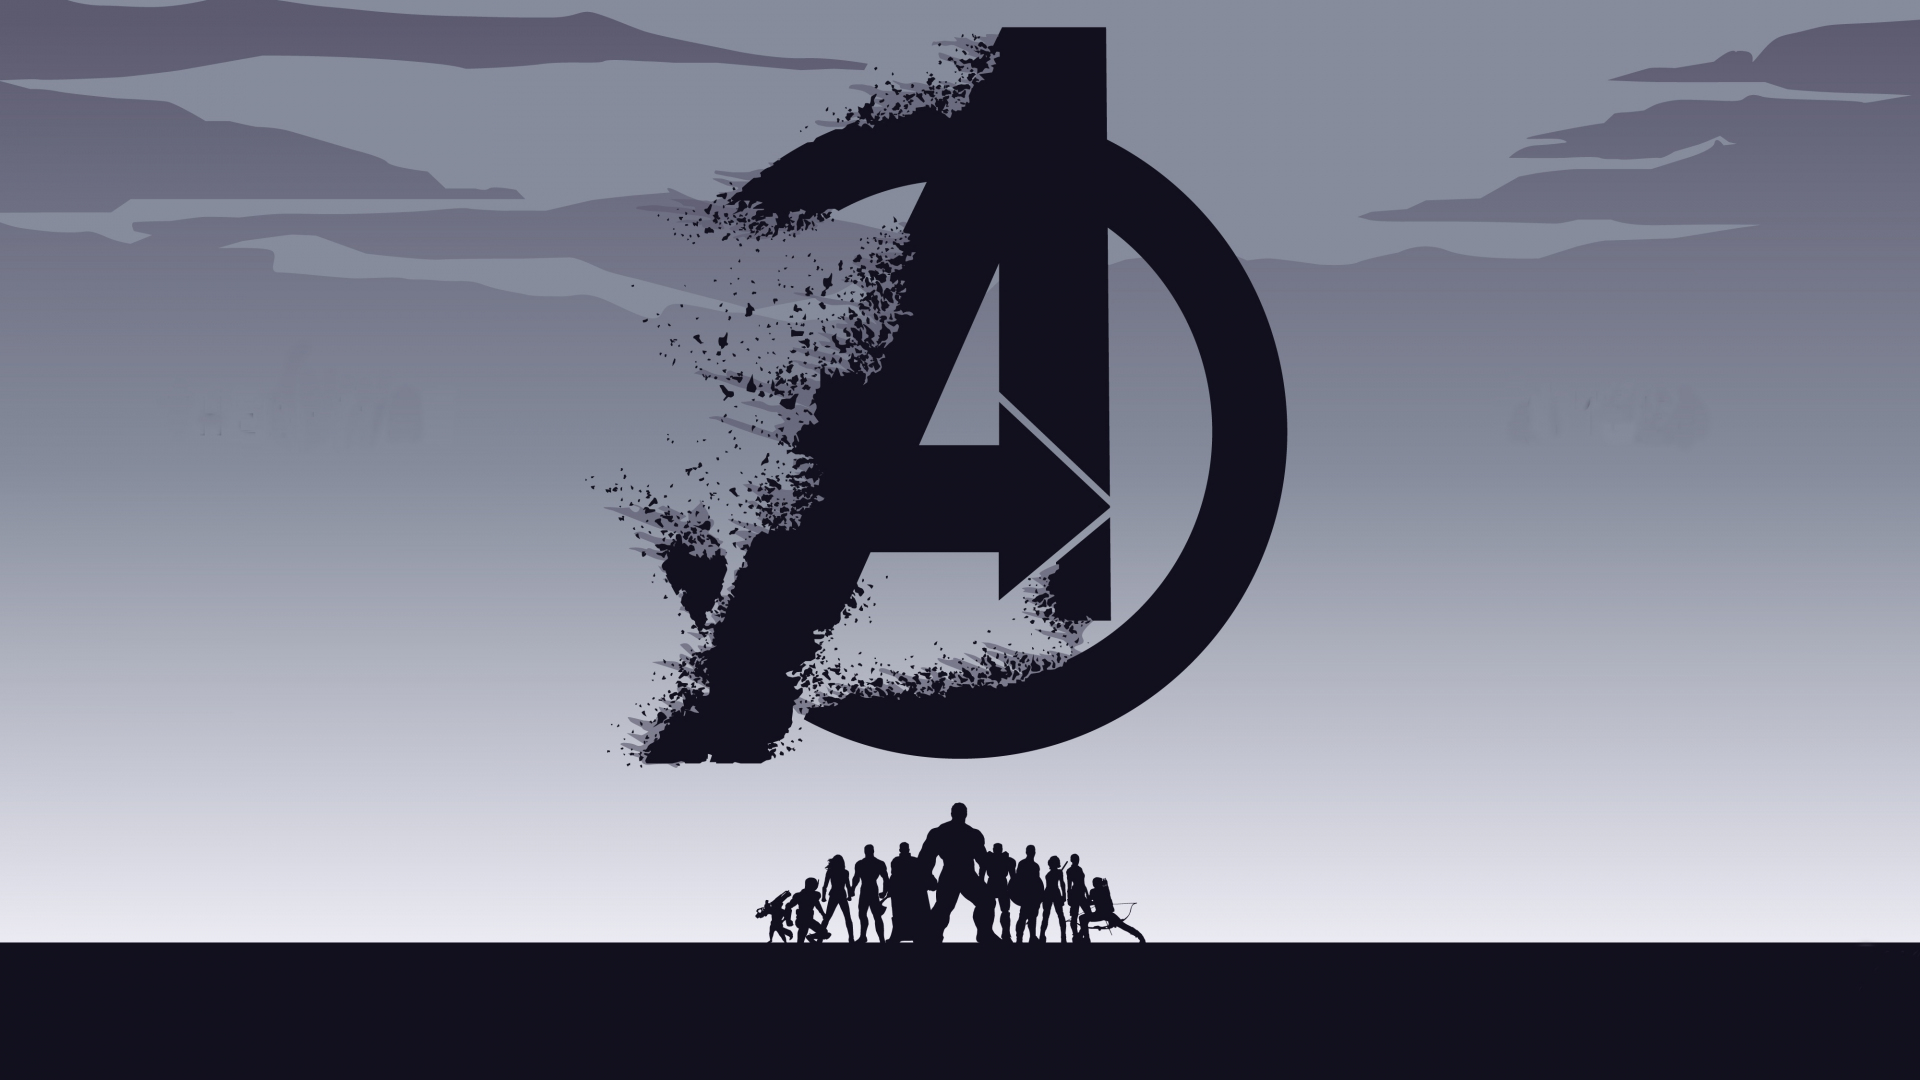 2019 movie, Avengers: Endgame, minimal, silhouette, art, 1920x1080 wallpaper